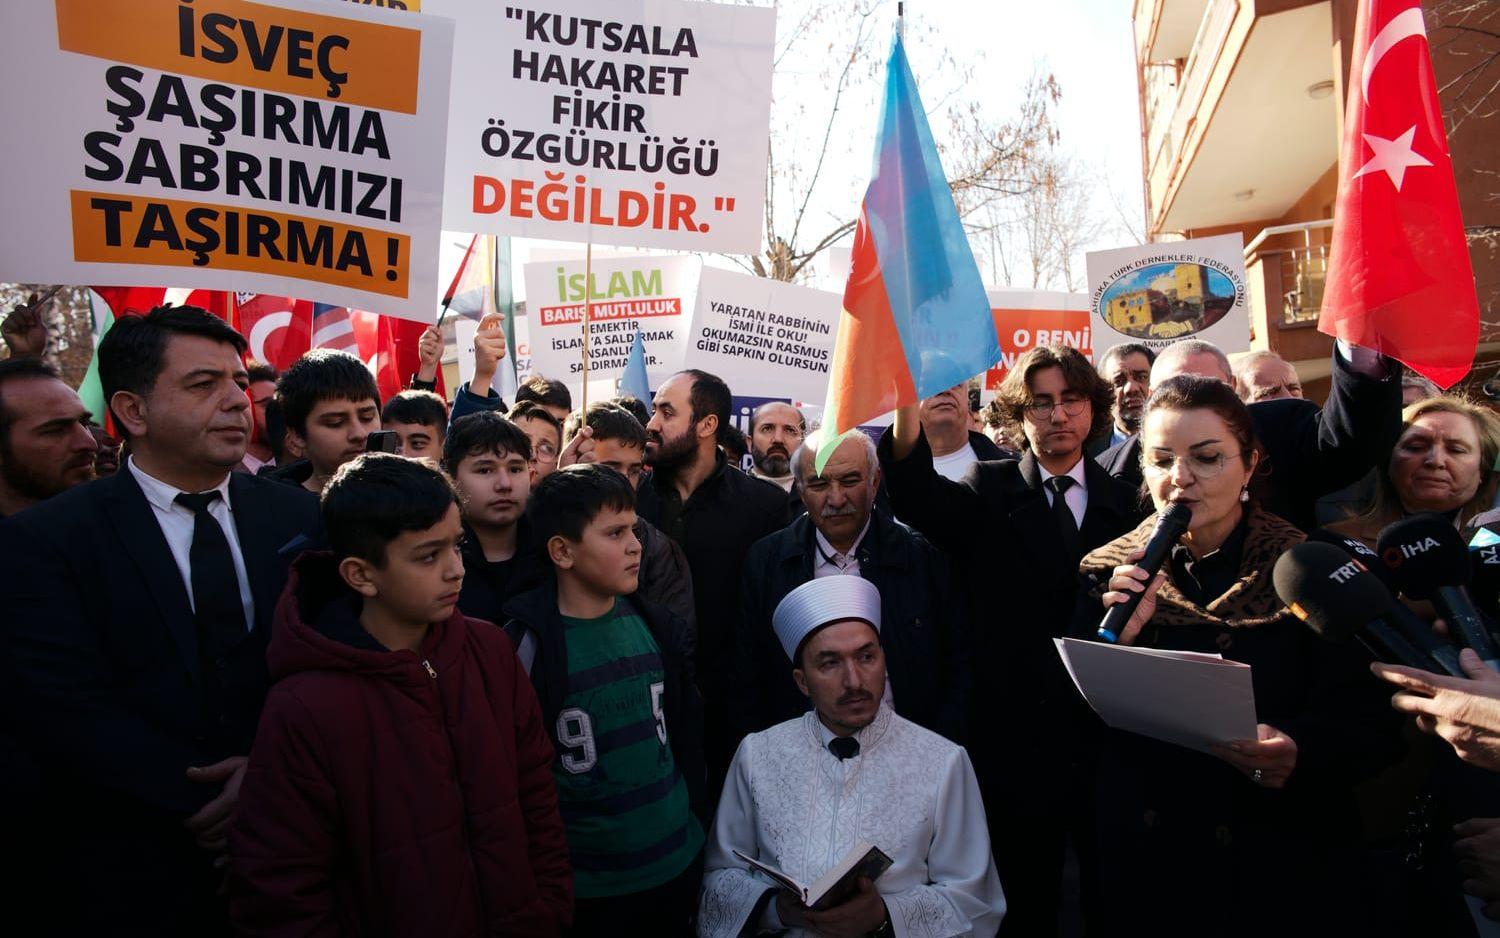 En imam läser ur koranen vid en protest utanför Sveriges ambassad i Ankara på tisdagen.